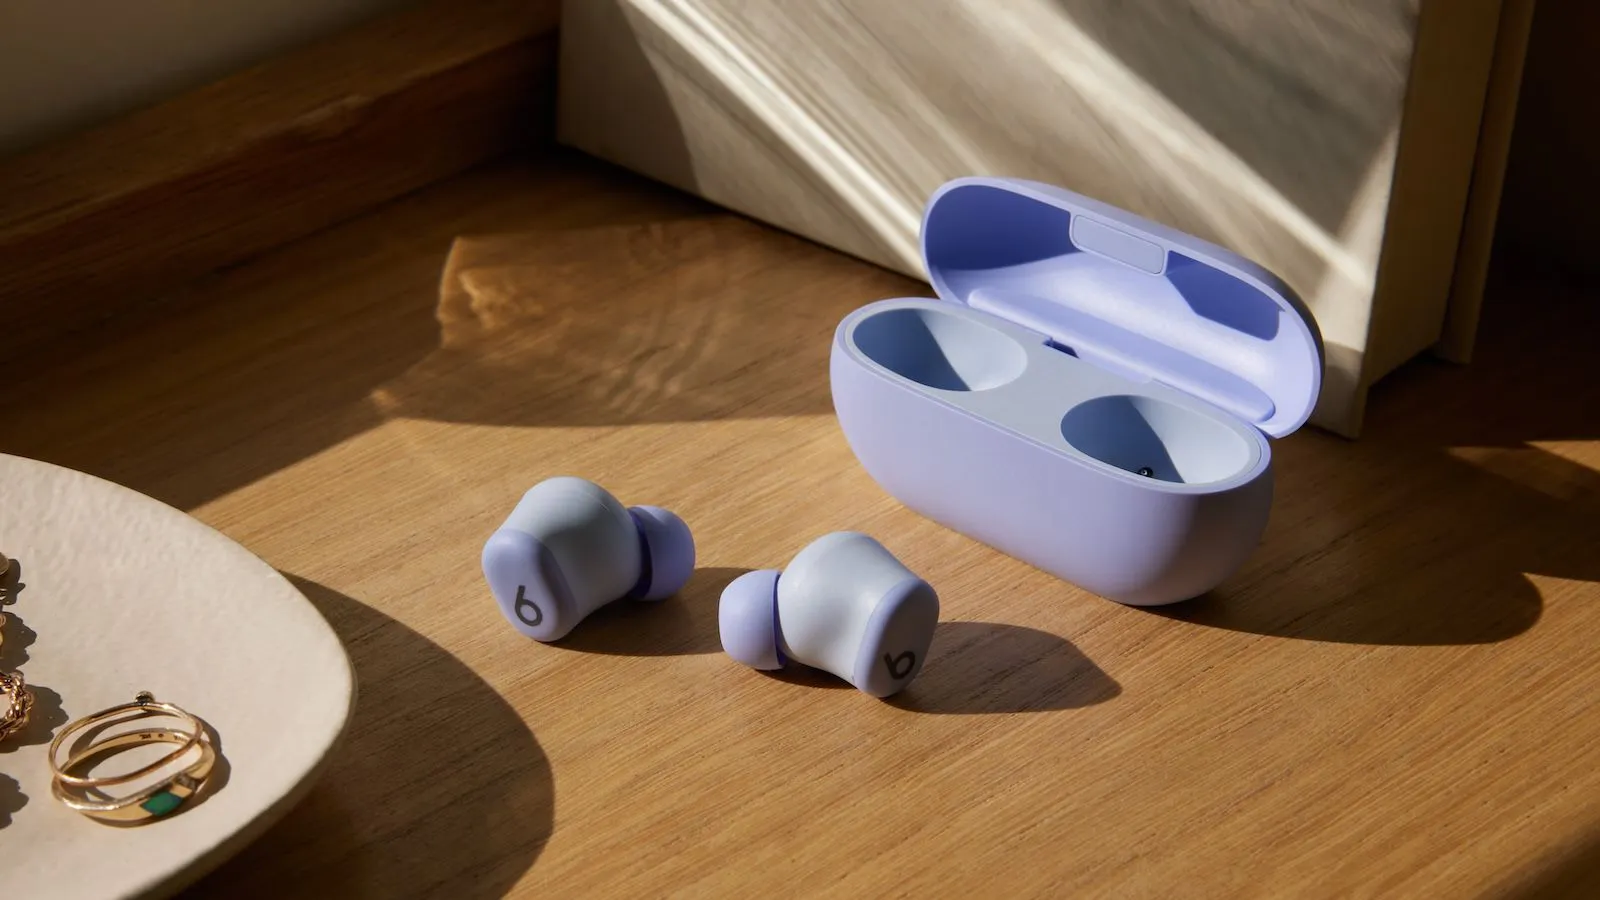 Cùng với tai nghe over-ear Beats Solo 4 mới, thương hiệu Beats của Apple vừa giới thiệu mẫu tai nghe true wireless giá rẻ hoàn toàn mới - Beats Solo Buds. Beats Solo Buds mang đến thời lượng pin 18 giờ và đi kèm hộp sạc nhỏ nhất từng được thiết kế cho tai nghe Beats.